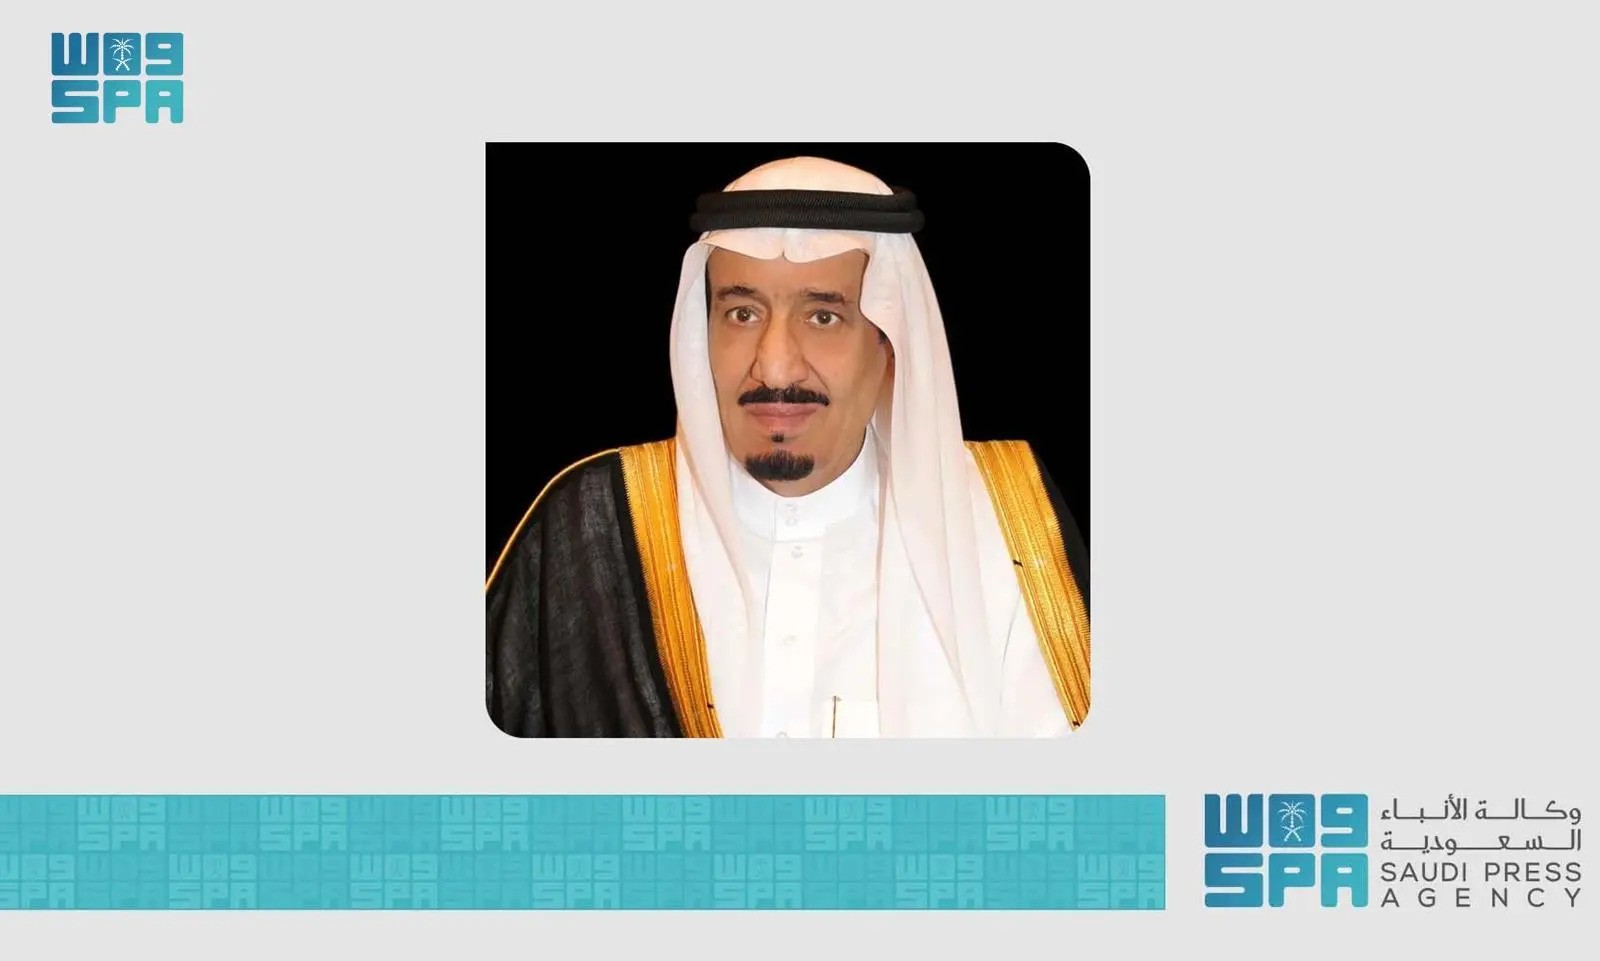 خادم الحرمين الشريفين الملك سلمان بن عبدالعزيز آل سعود (واس)